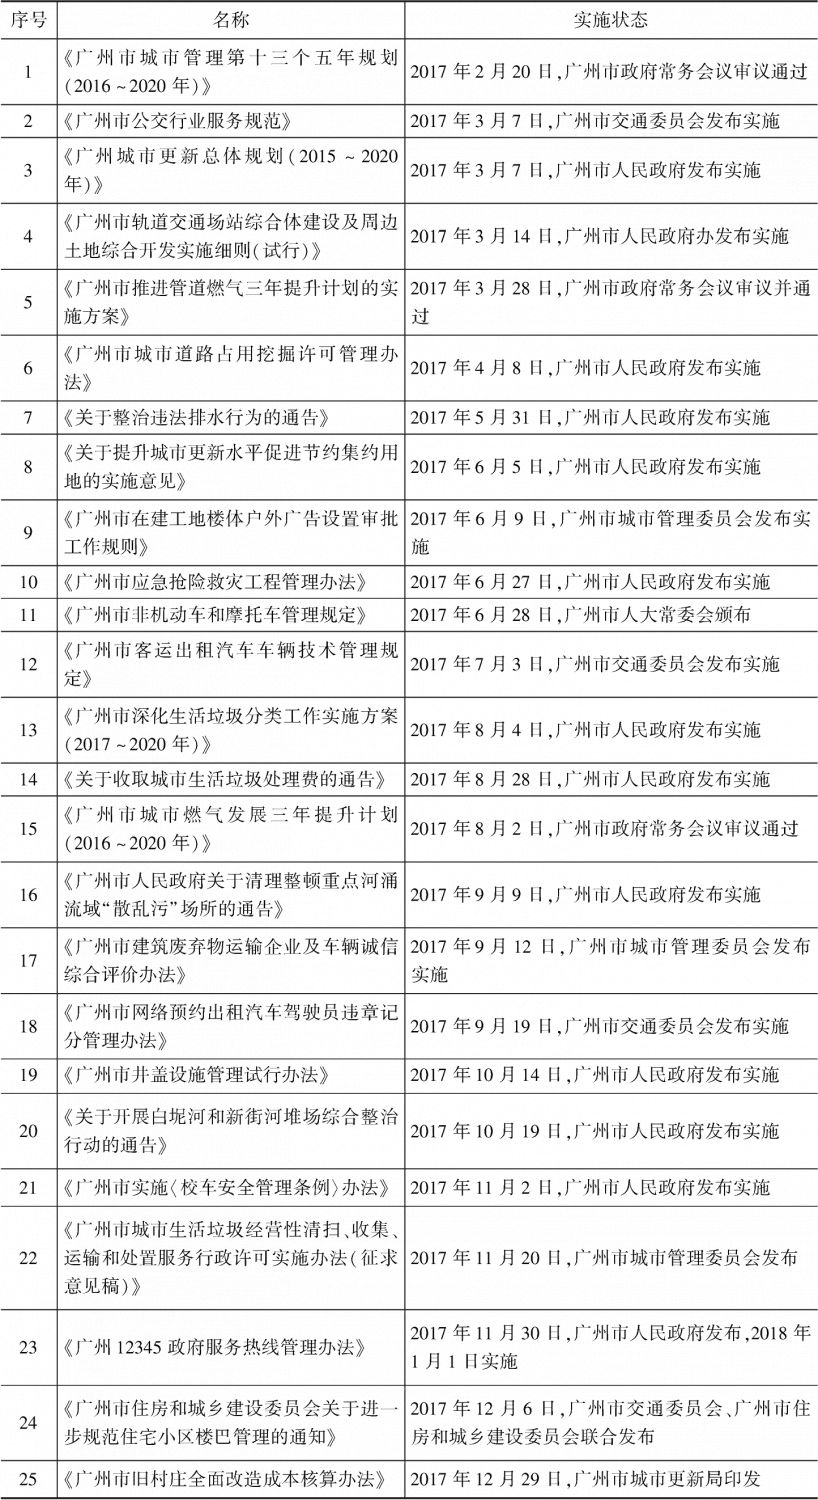 表1 2017年广州市城市管理领域规范性文件（部分）